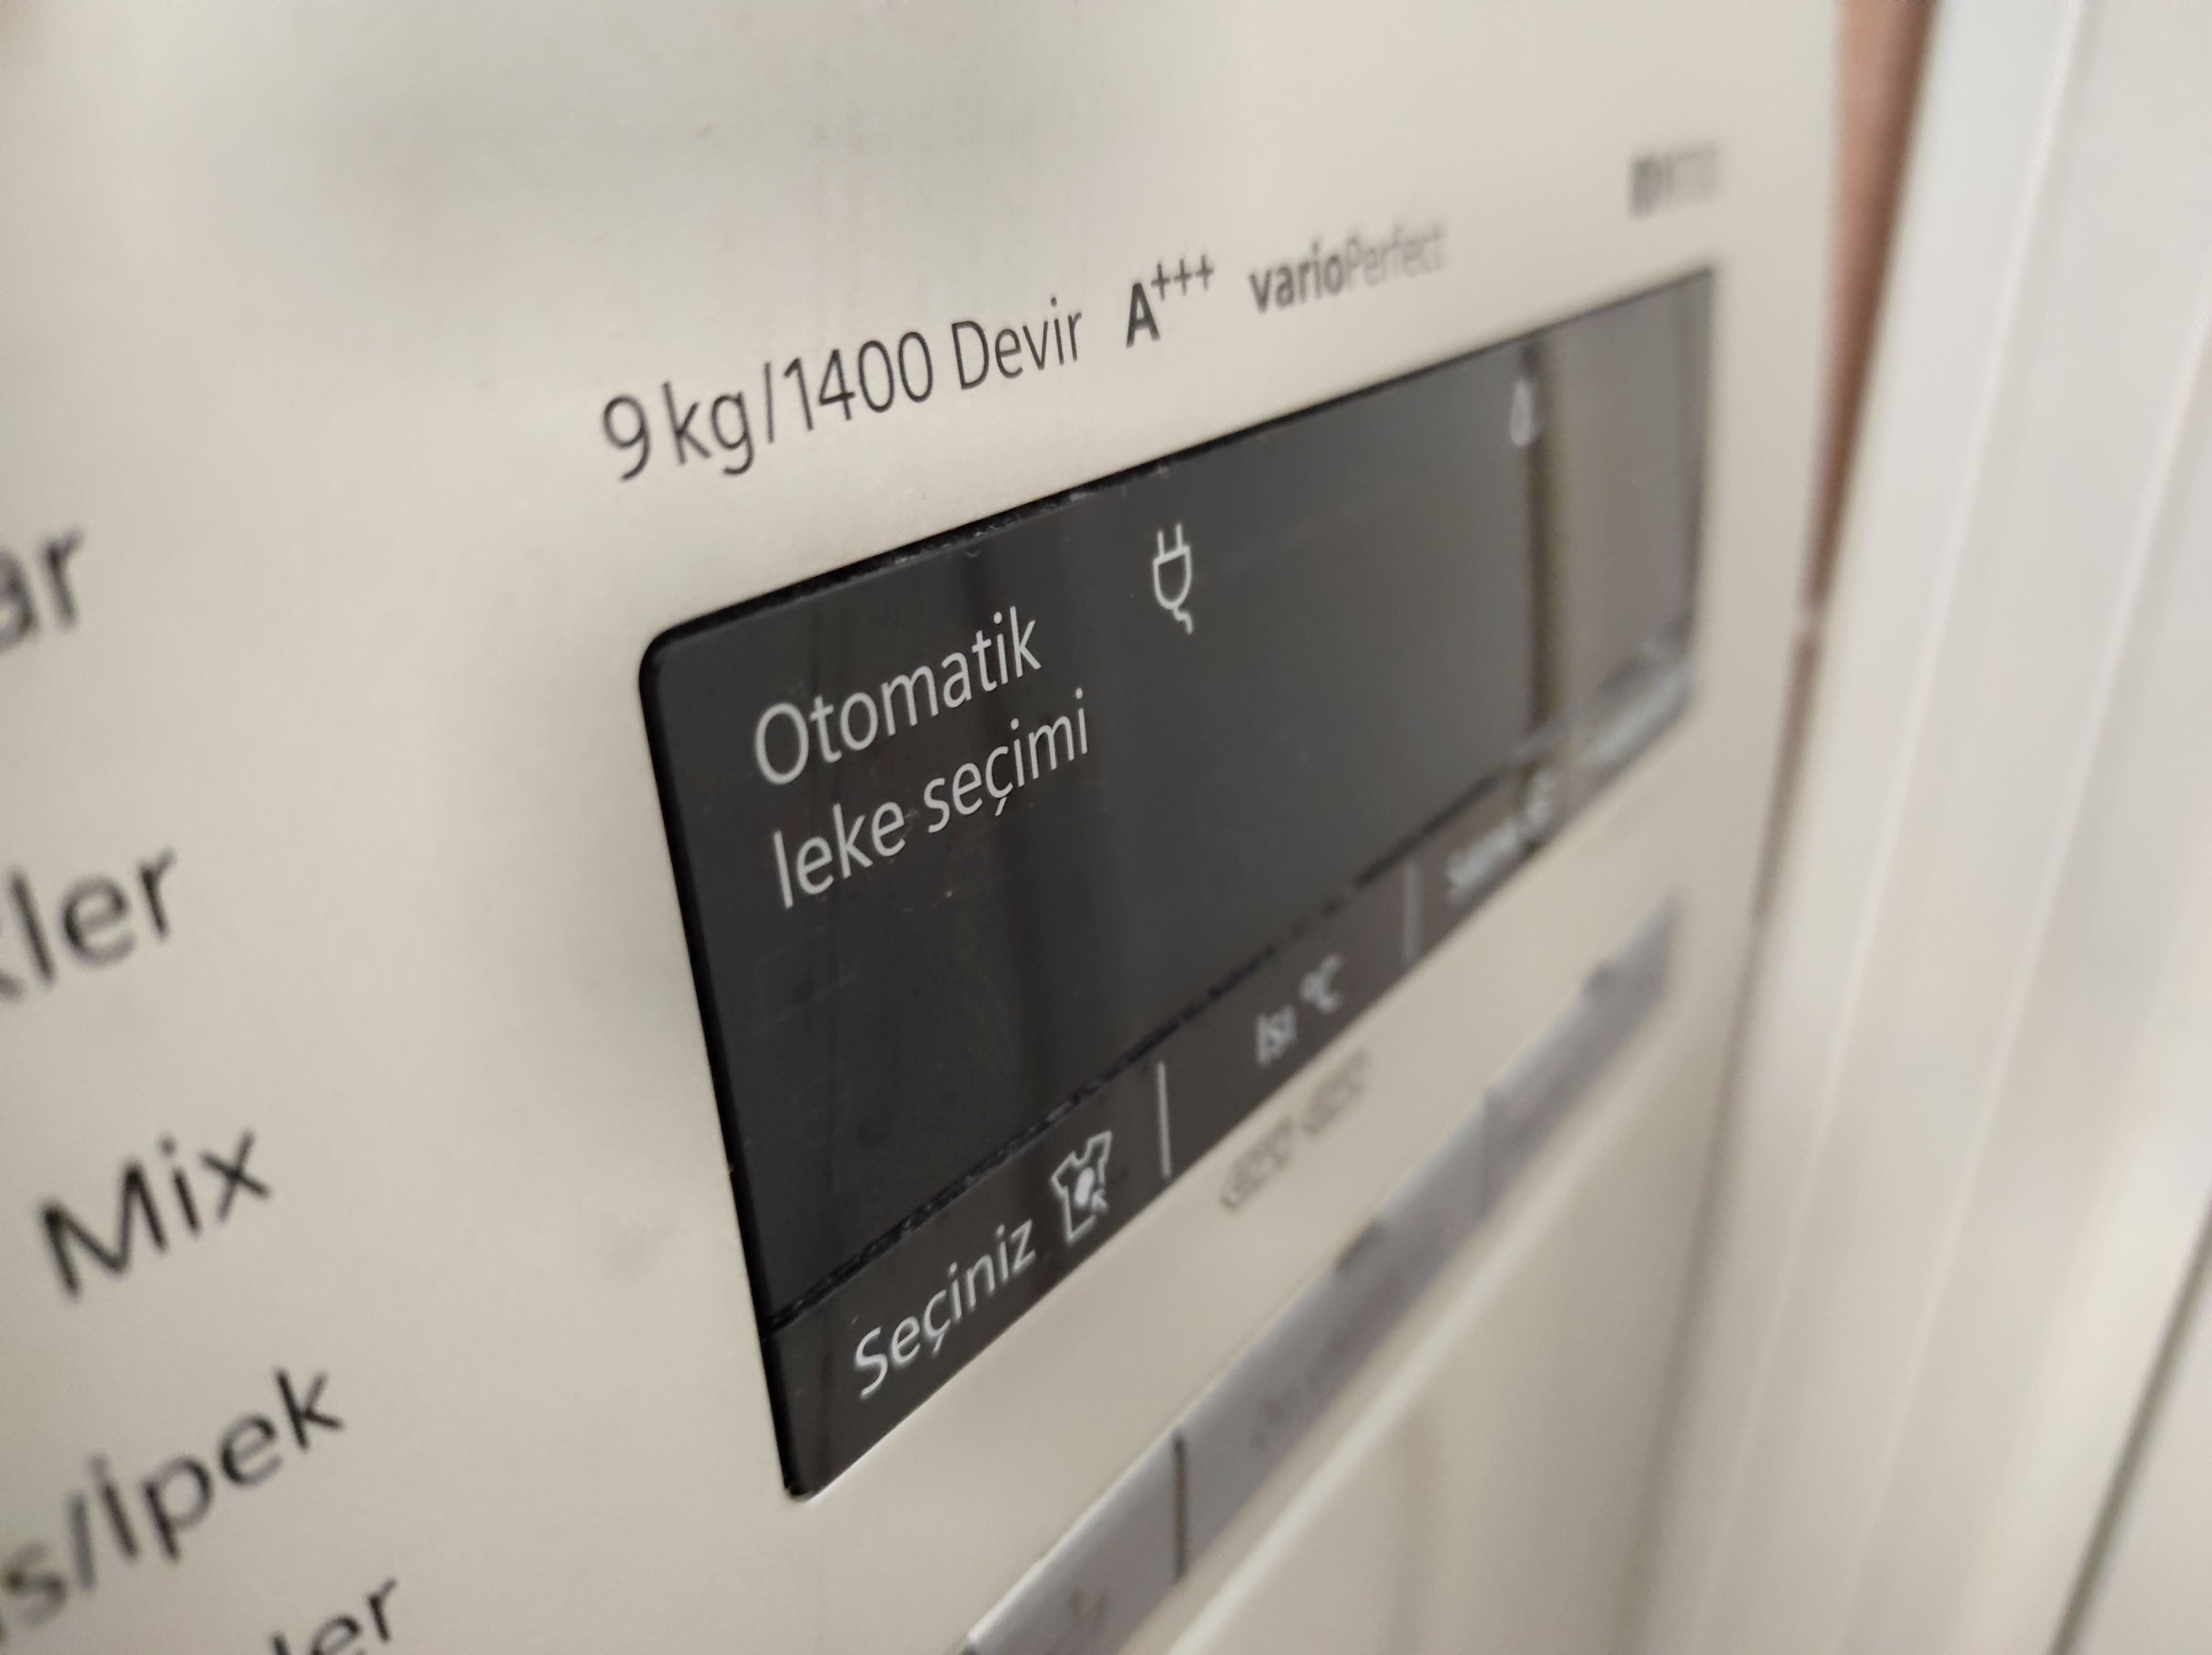 Обзор на стиральную машину Siemens IQ700